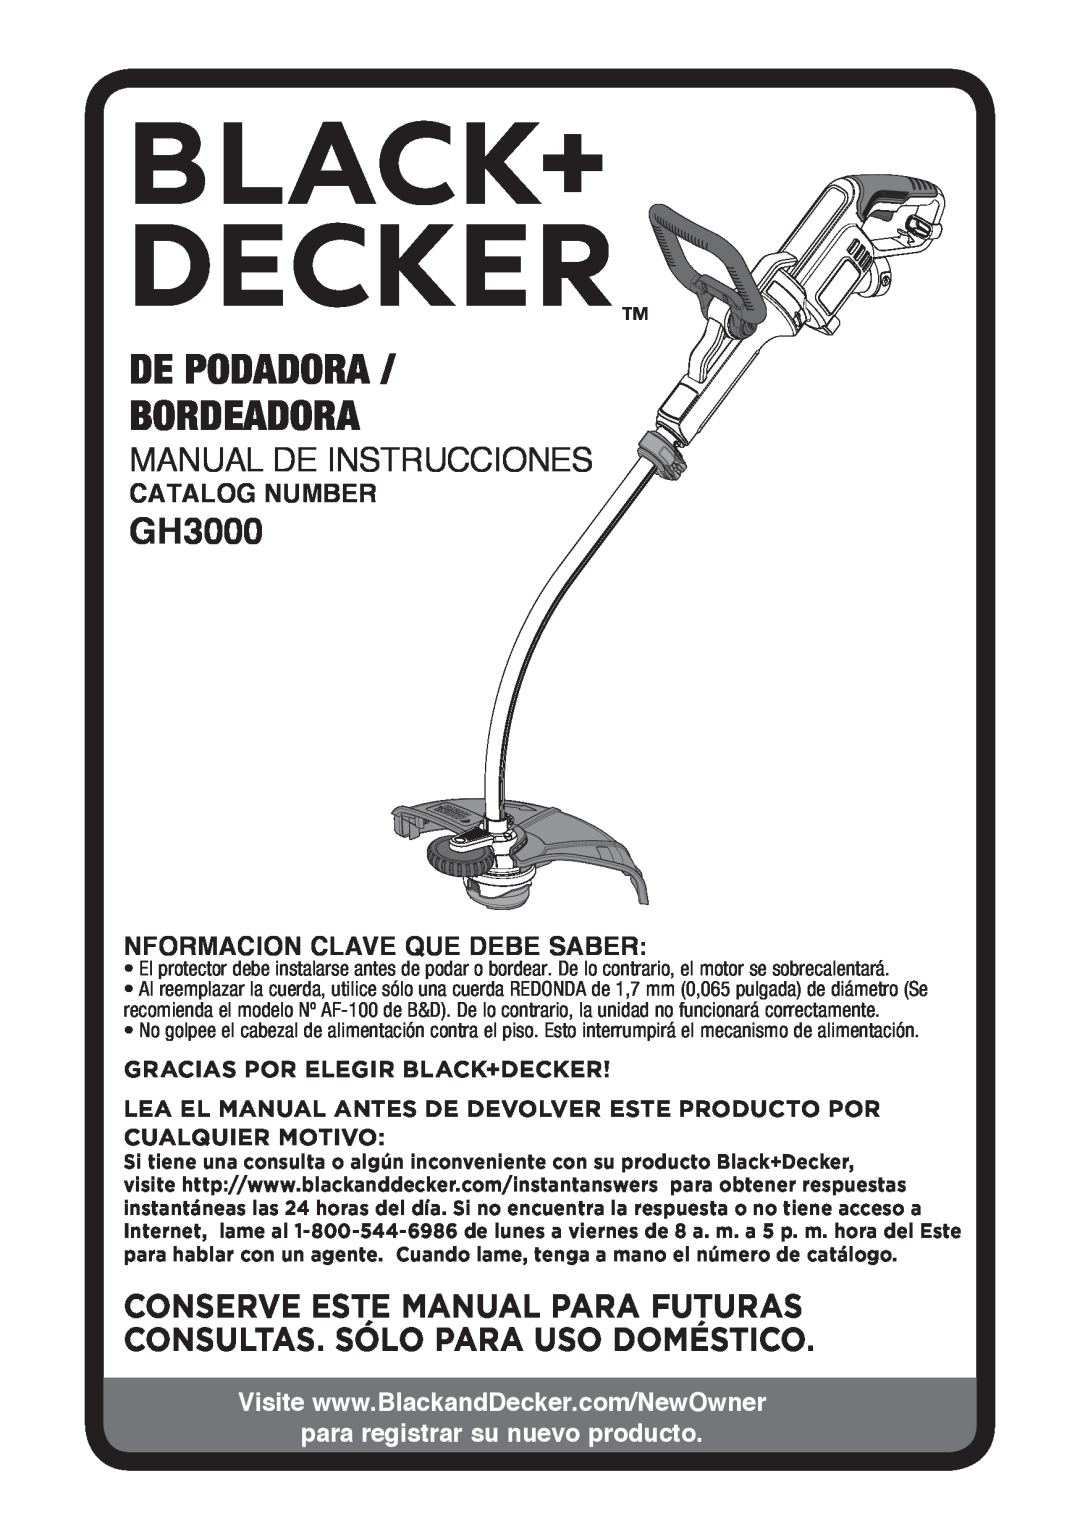 Black & Decker GH3000R De Podadora Bordeadora, Manual De Instrucciones, Catalog Number, Nformacion Clave Que Debe Saber 